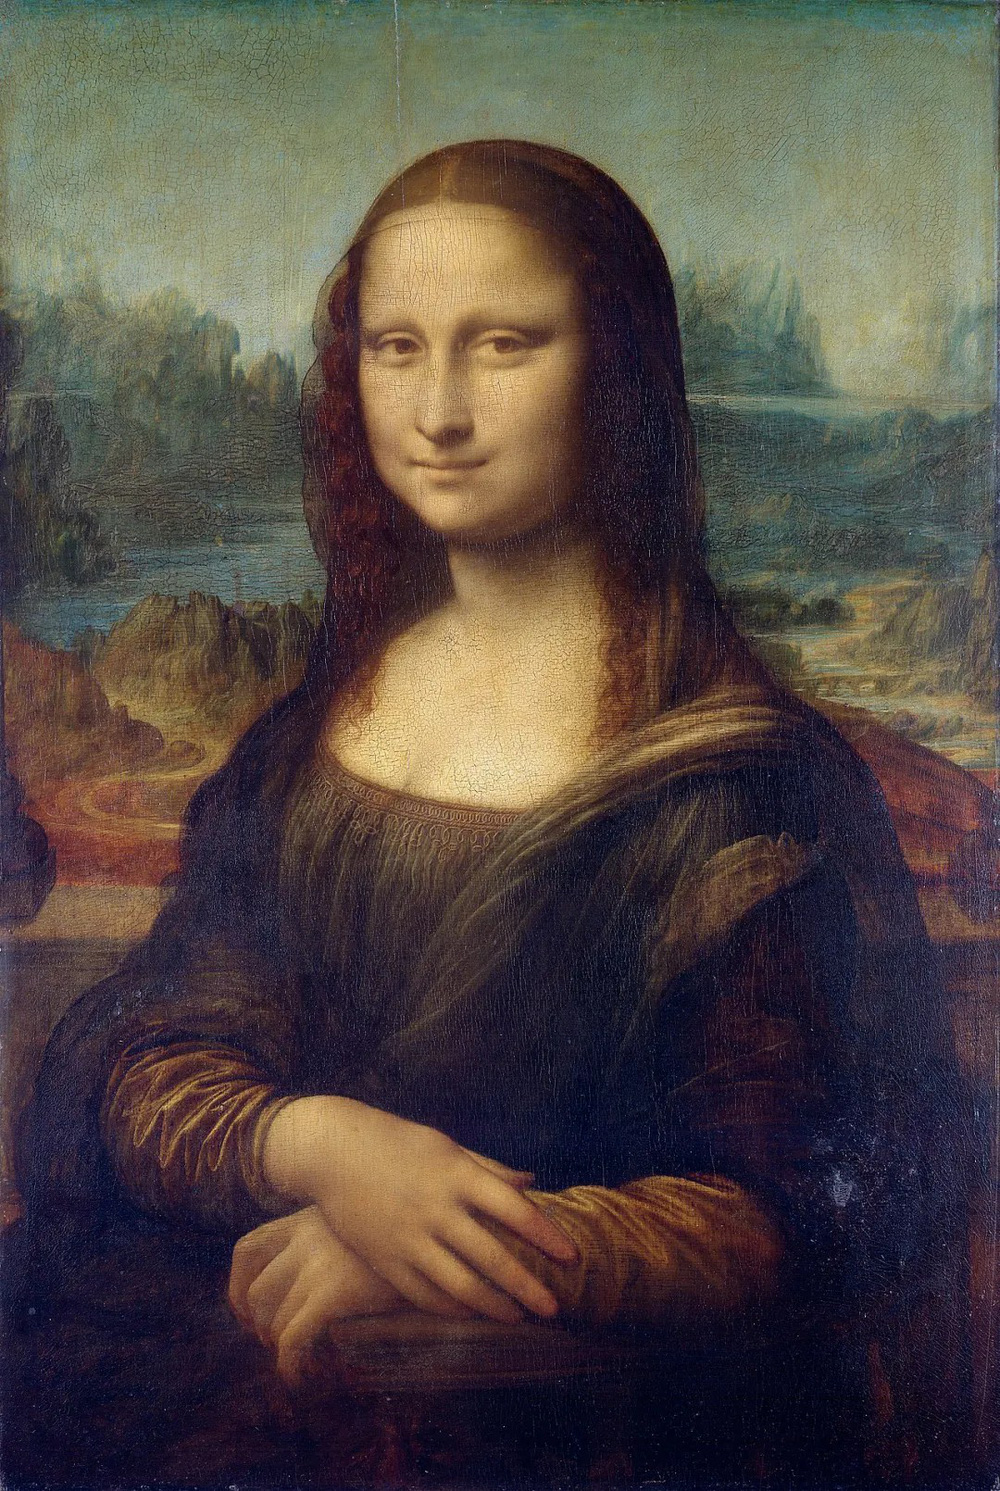 Phóng to bức tranh nàng Mona Lisa phương Đông gần 290 tỷ đồng: Người xem rùng mình! - Ảnh 1.